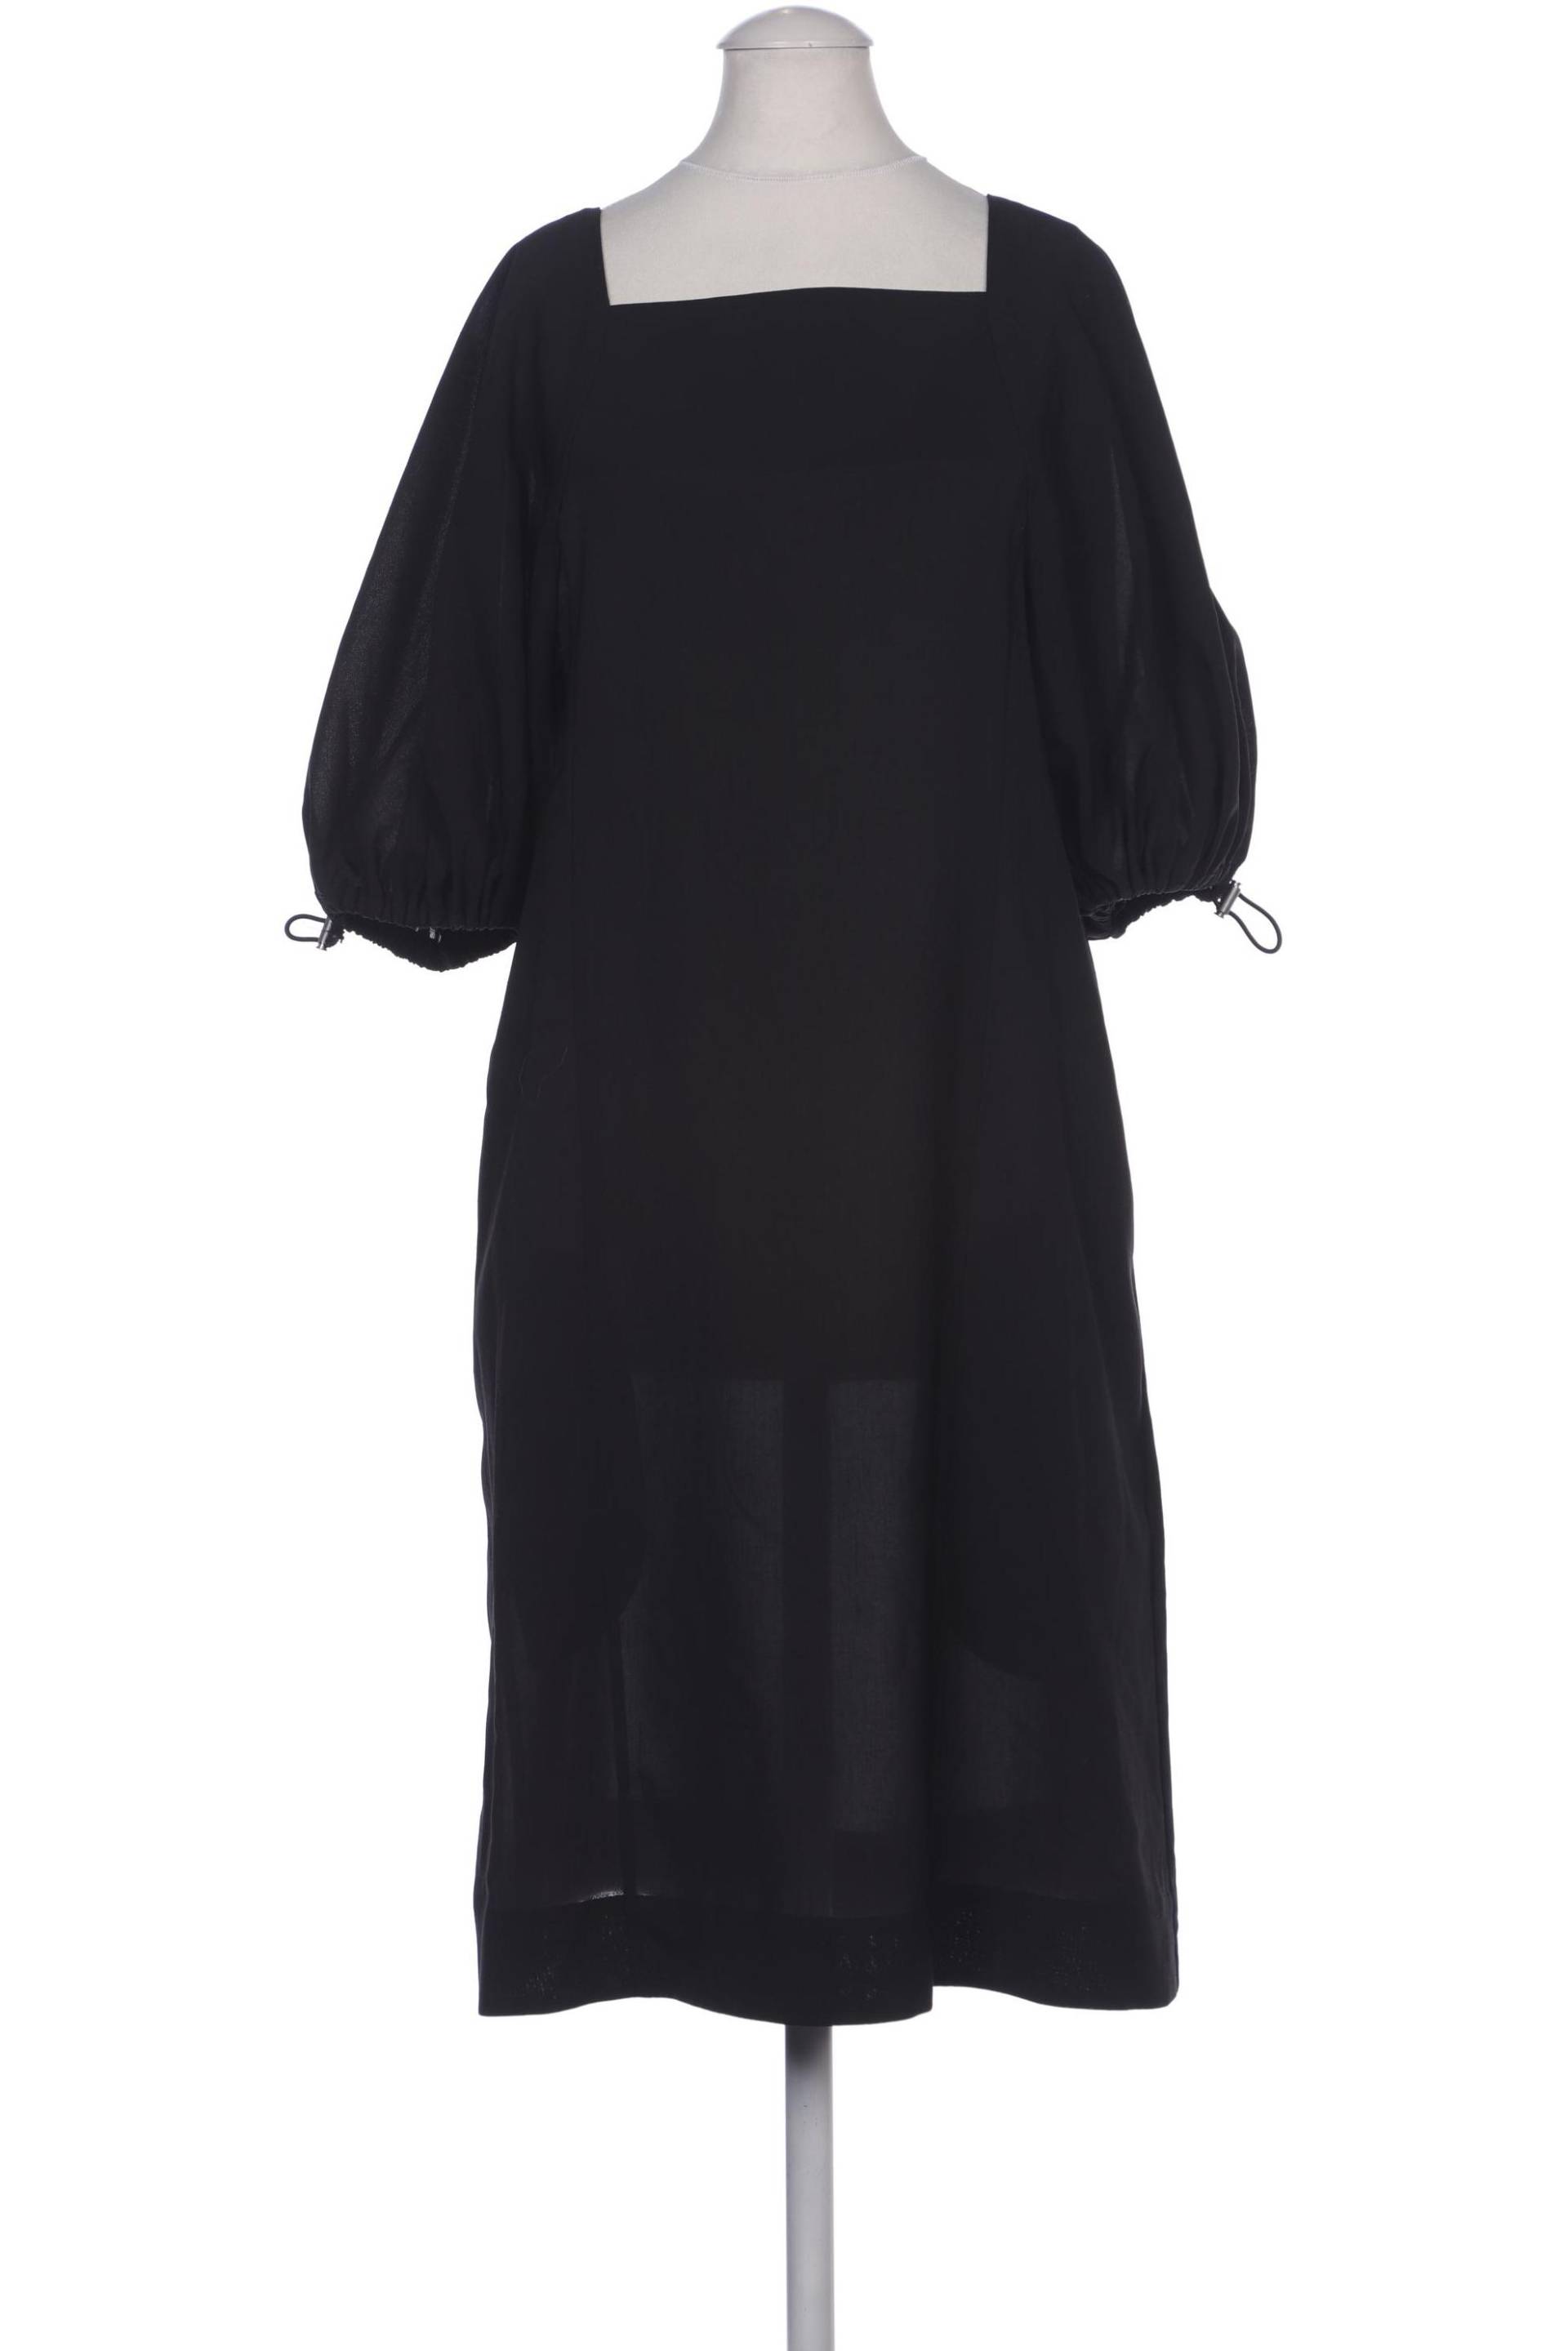 COS Damen Kleid, schwarz, Gr. 36 von COS